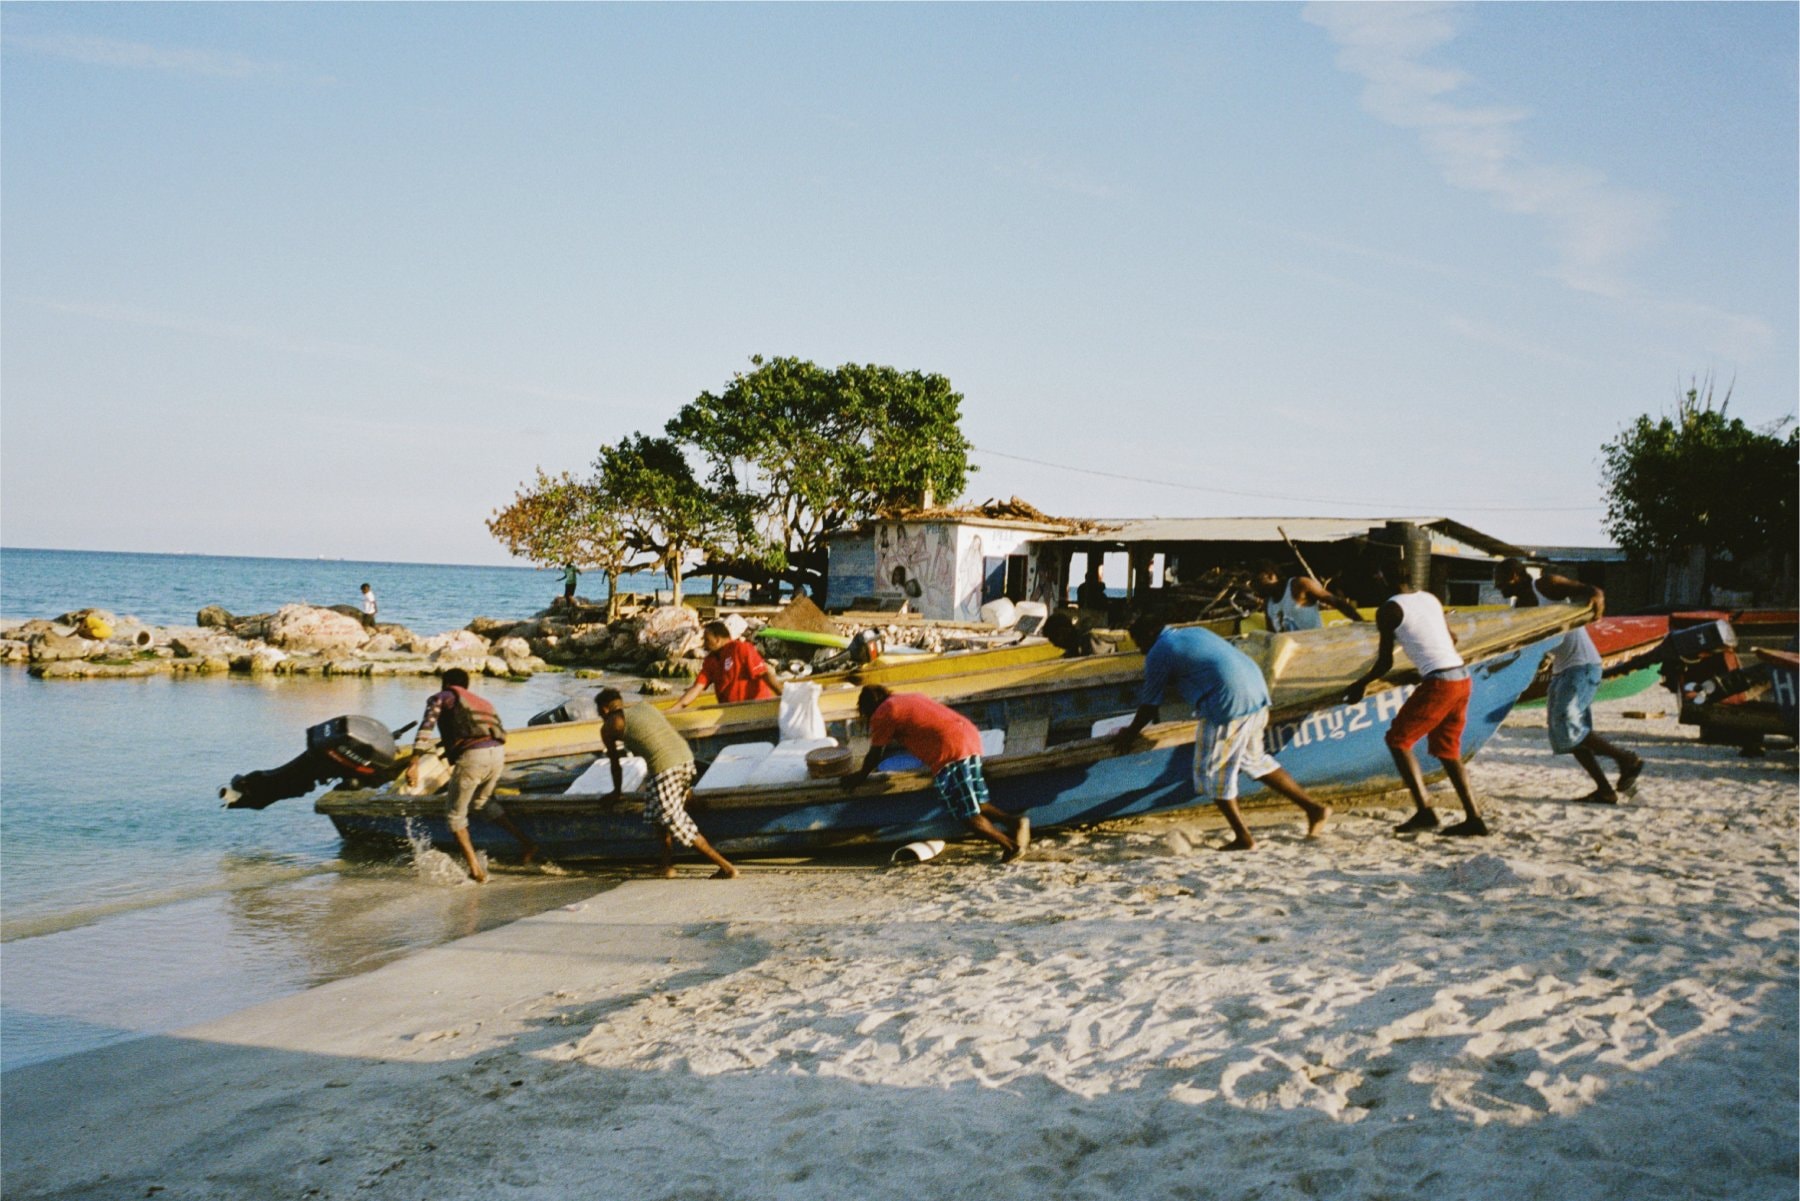 에임 레온 도르, 자메이카의 해변을 담은 2020 봄, 여름 캠페인 룩북 공개